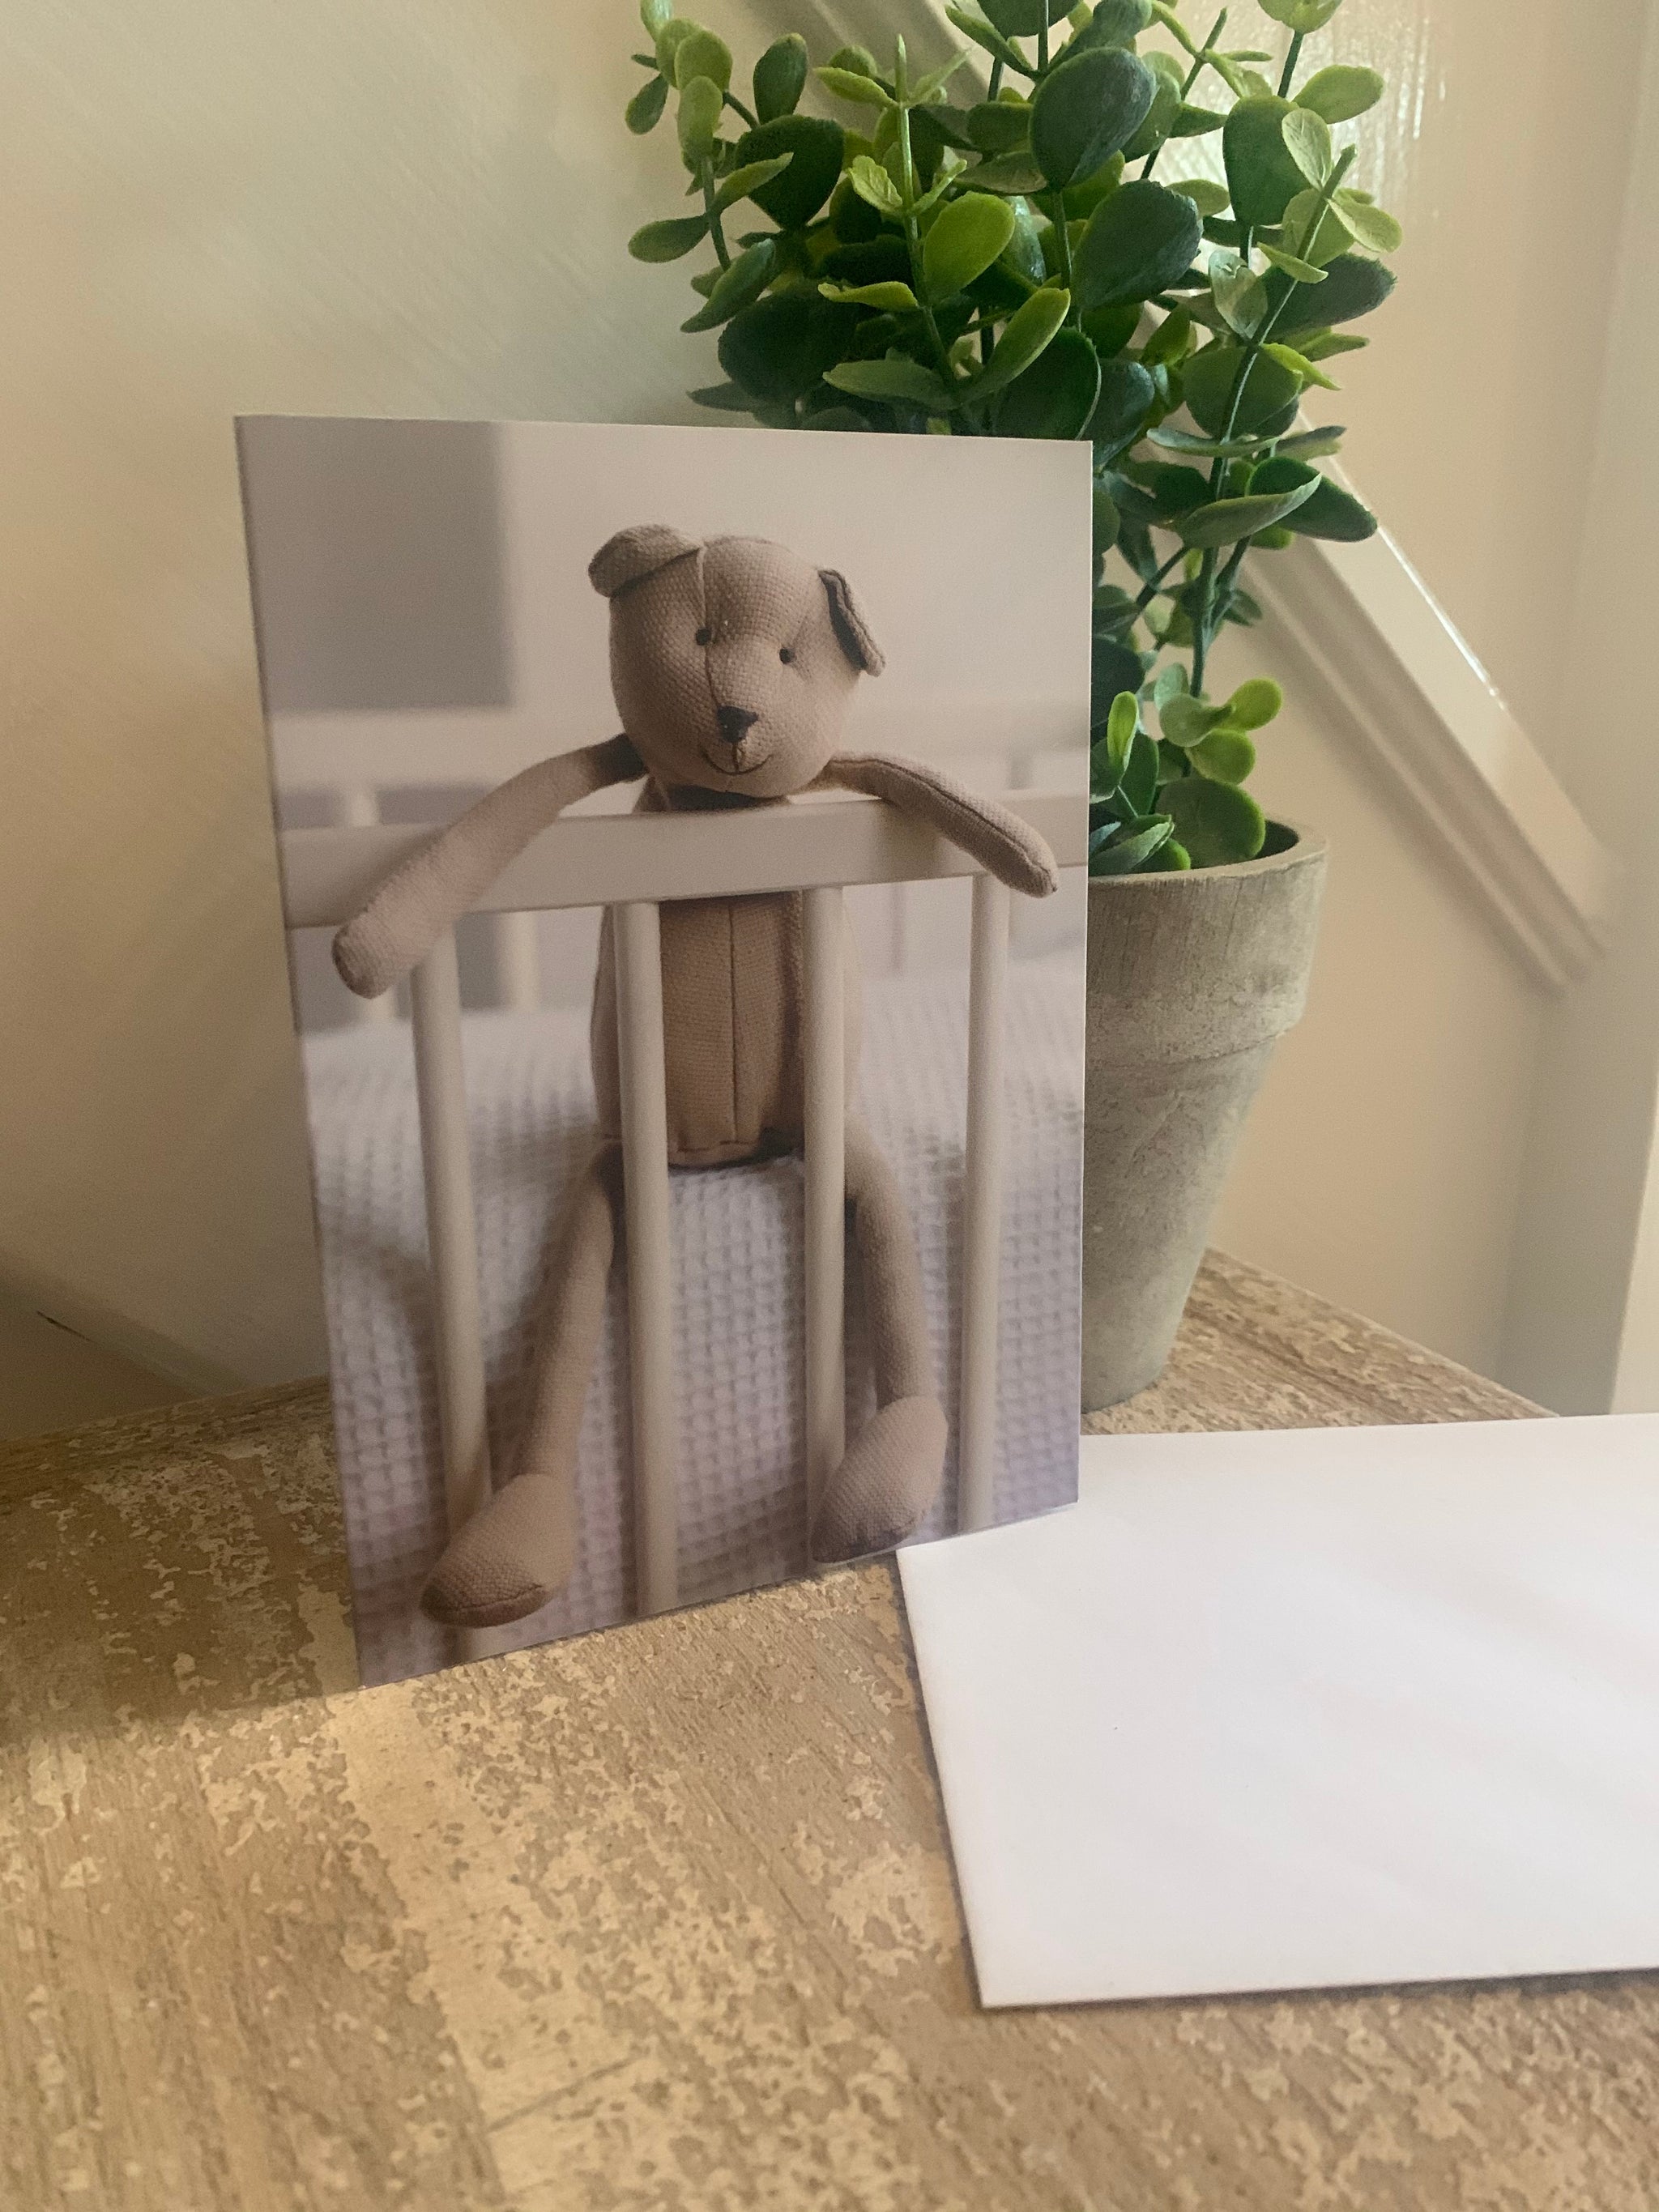 Cute teddy greeting cards - 4 designs